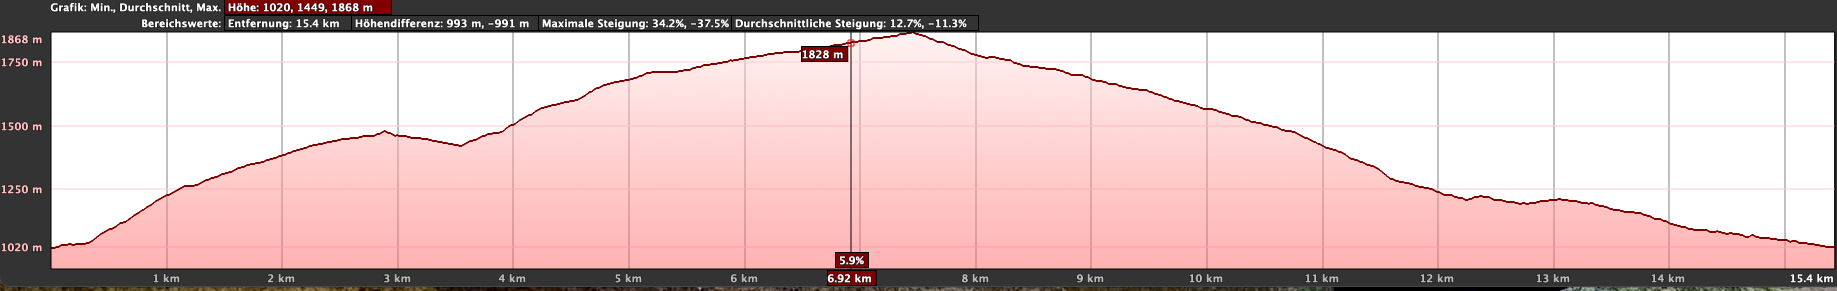 Perfil de altitud de la ruta de Chirche por la Galería Machado 1 y por el Refugio de Chasogo (variante 2)
